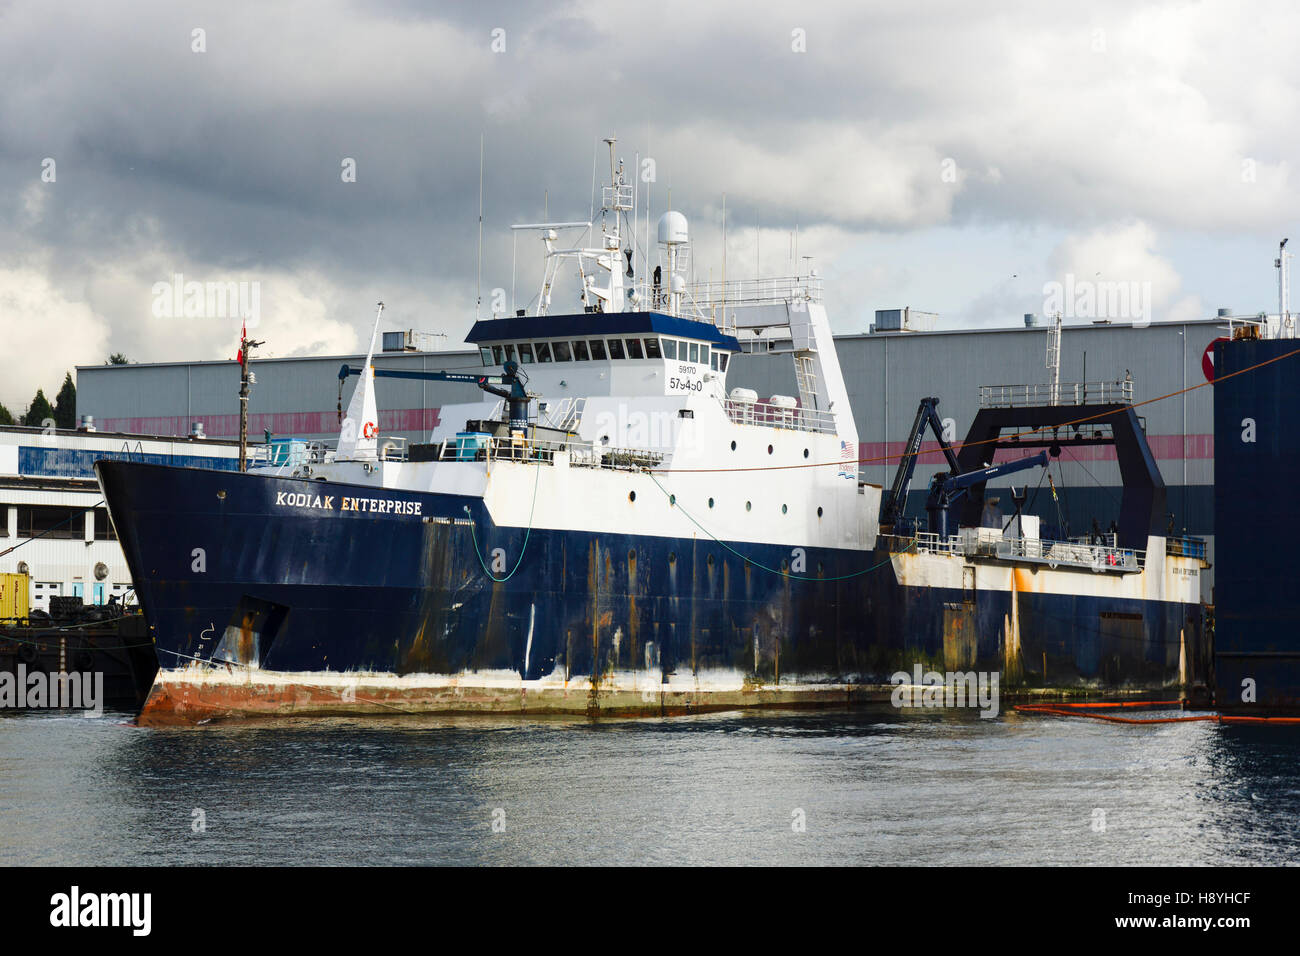 La pesca a strascico 'Kodiak Enterprise' a Seaspan cantieri navali in North Vancouver, BC, Canada. Foto Stock